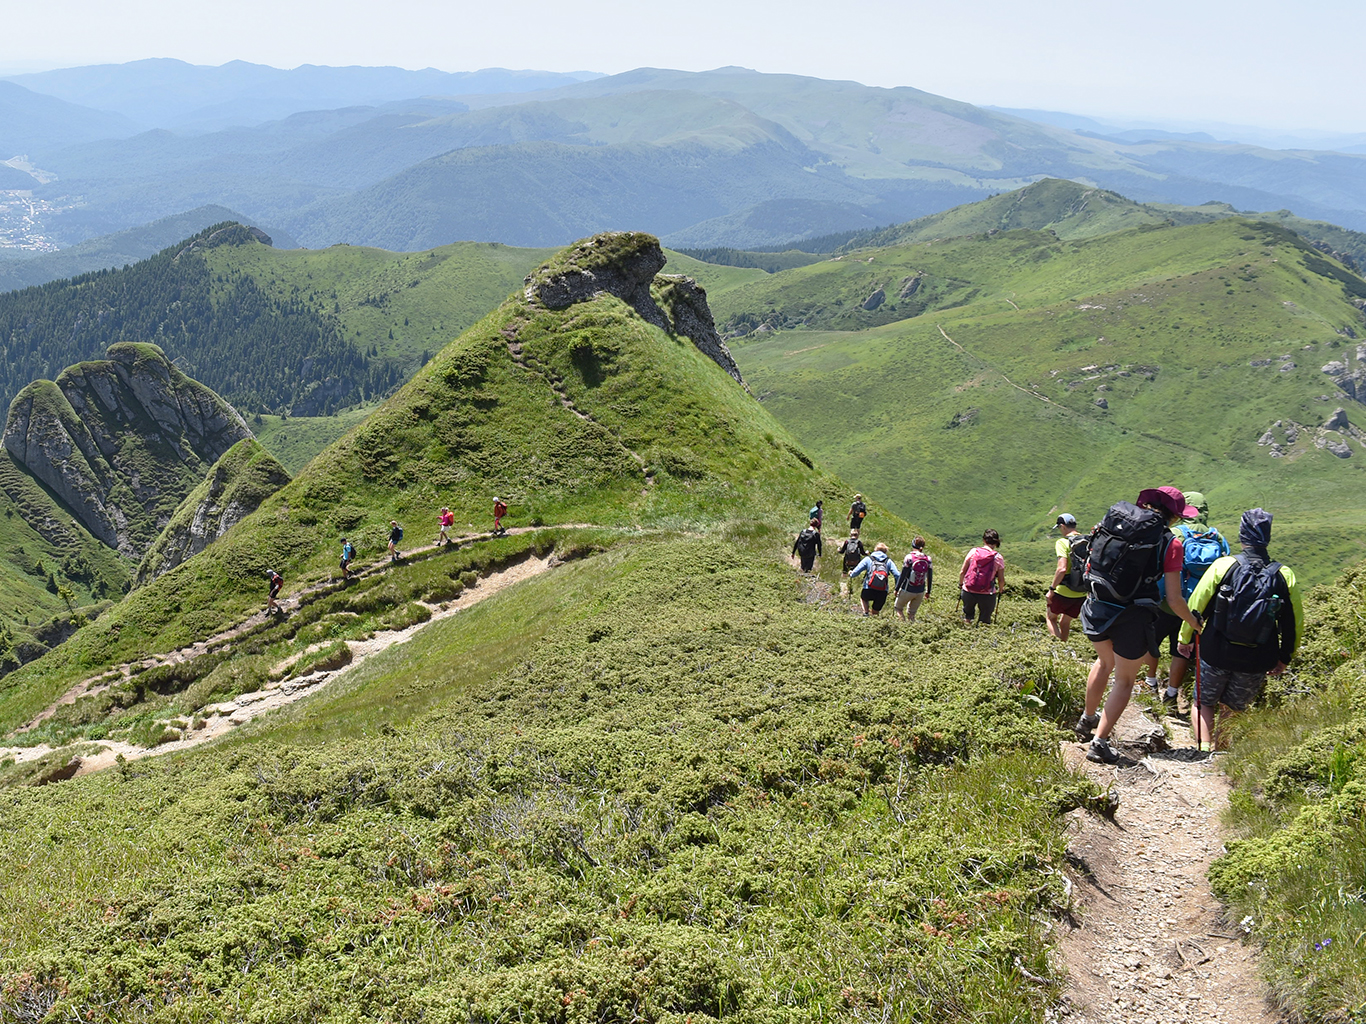 Sestup v pohoří Ciucaş, které je tvořené převážně vápencem a slepencem